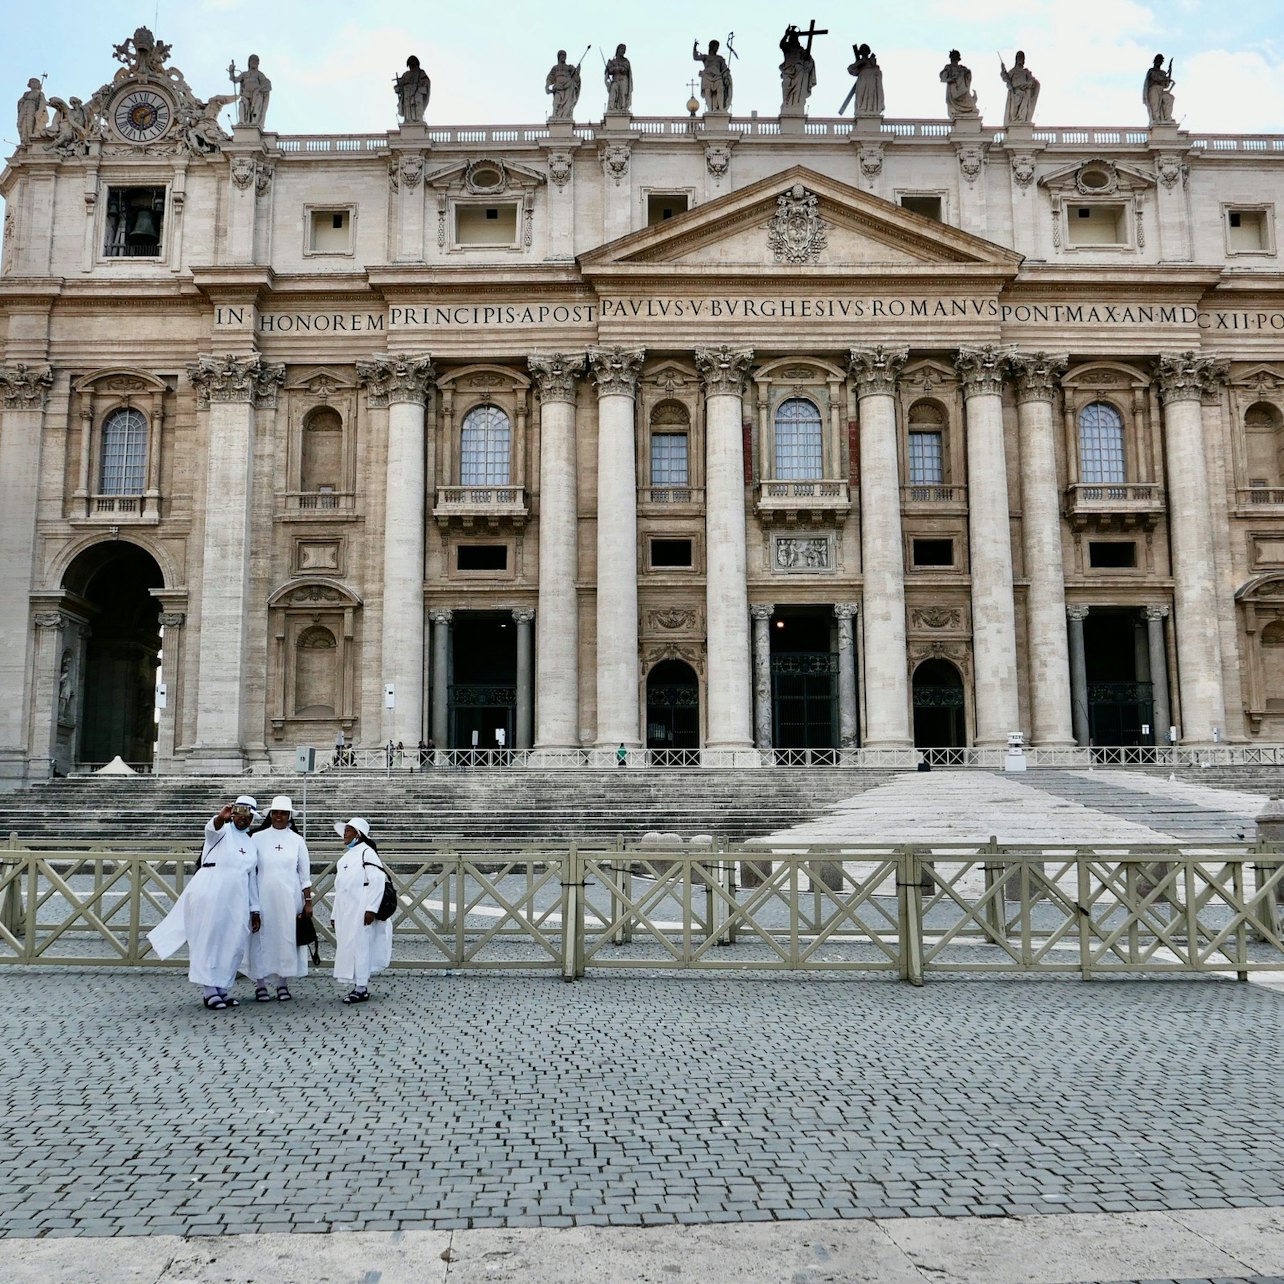 Basílica de San Pedro, Plaza y Grutas Papales: Visita guiada vespertina - Alojamientos en Roma